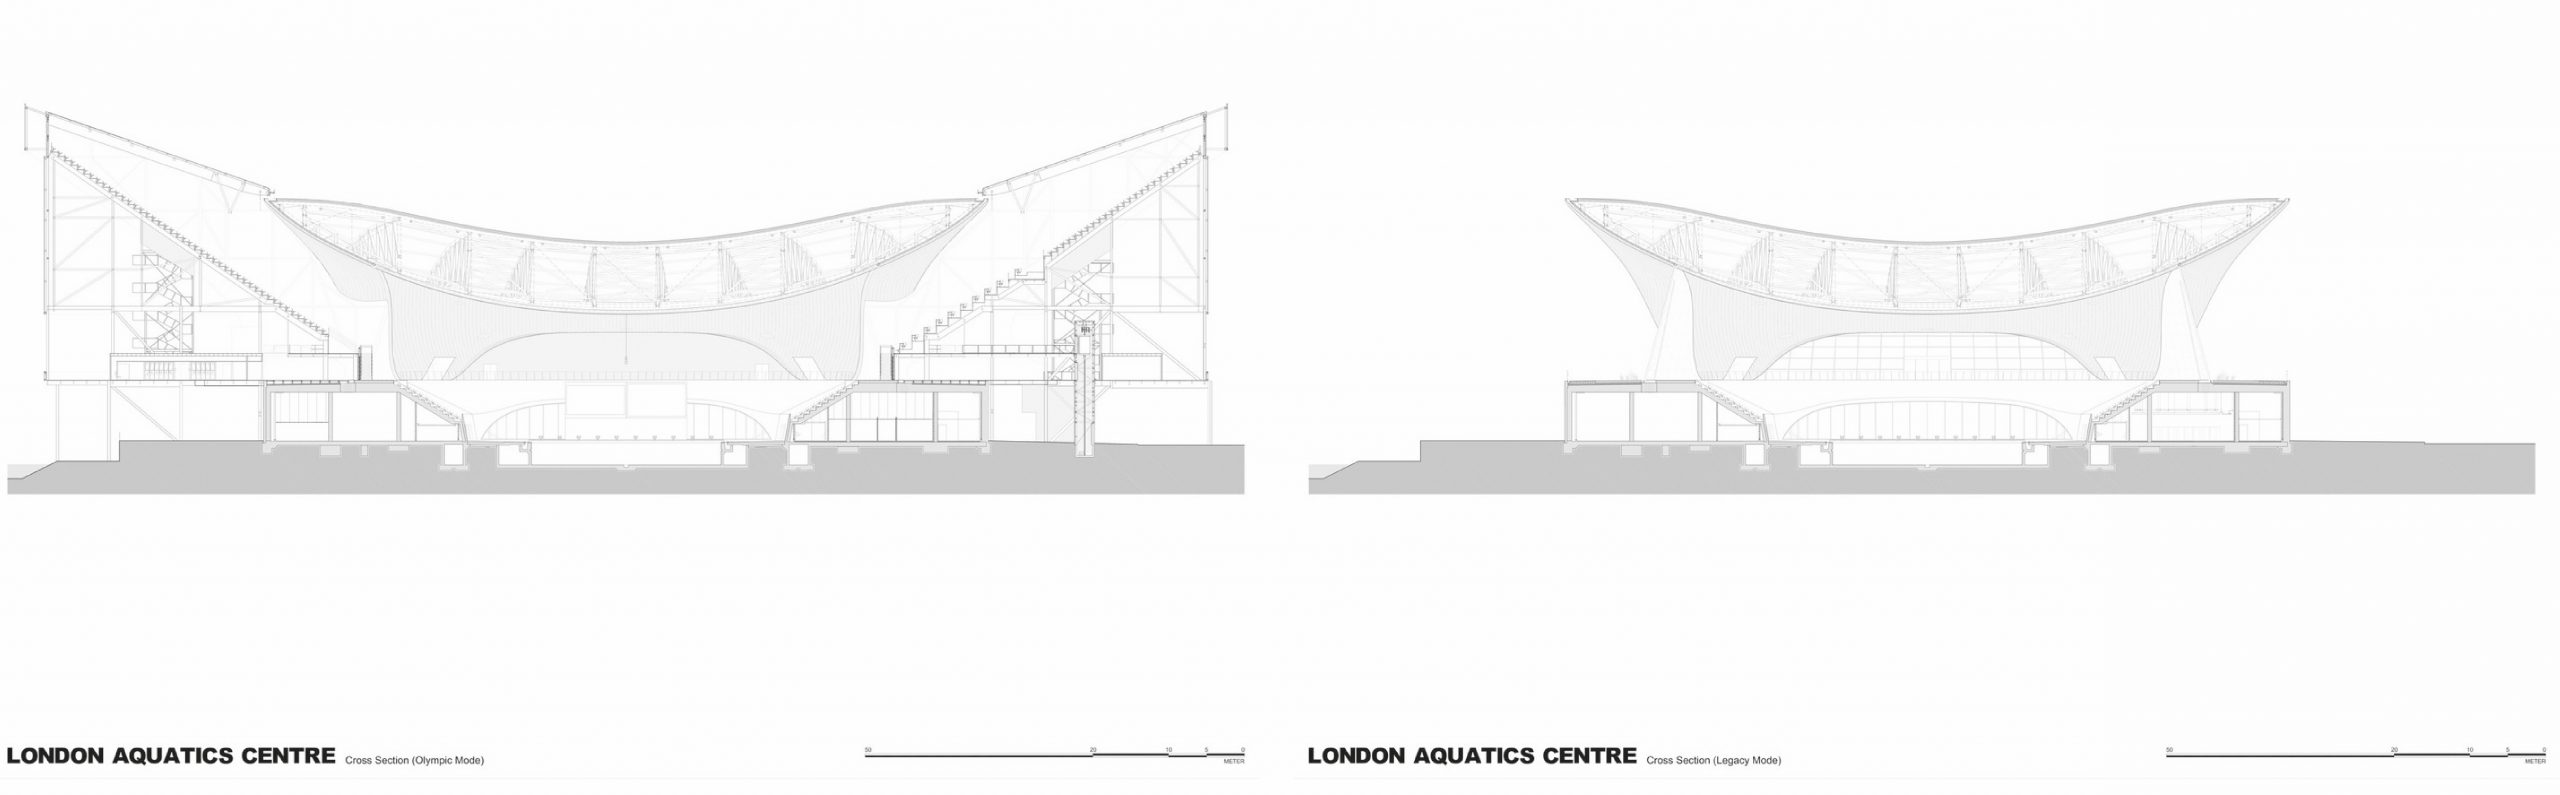 Sección del Centro Acuático de Londres durante y después de los JJ.OO. 